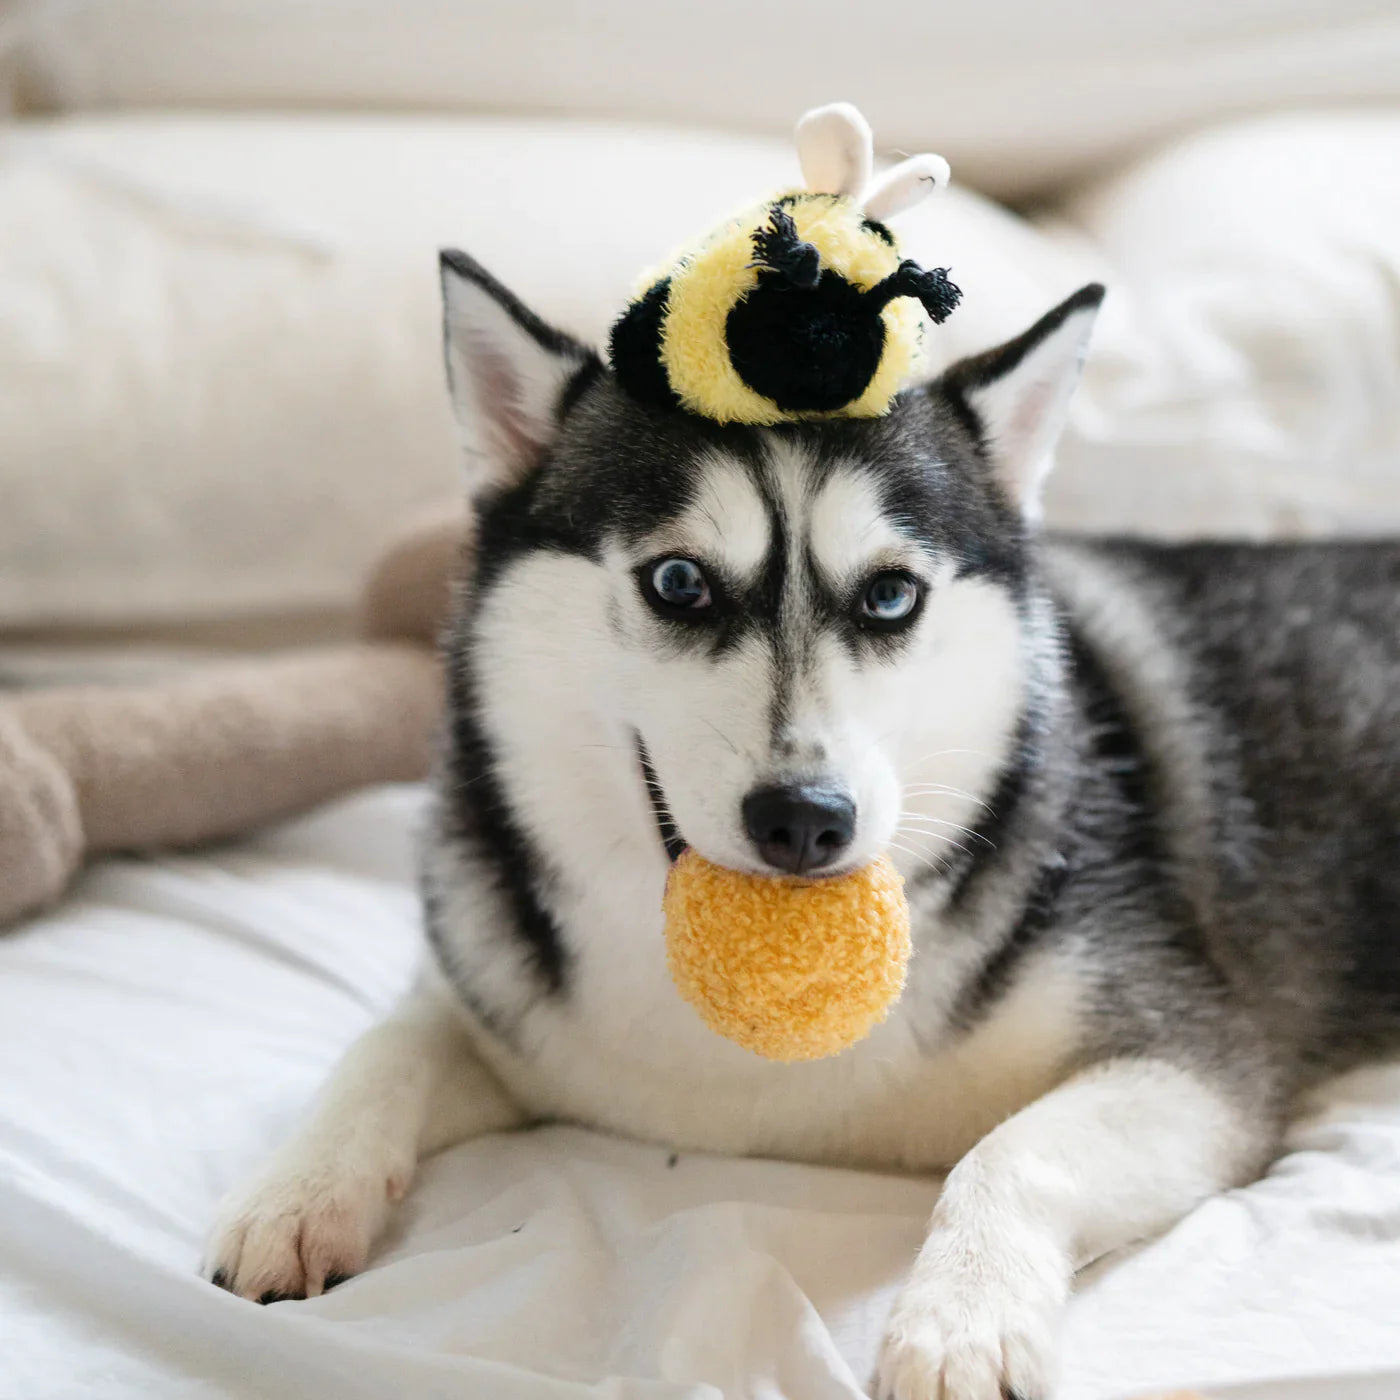 Bee Bug POP